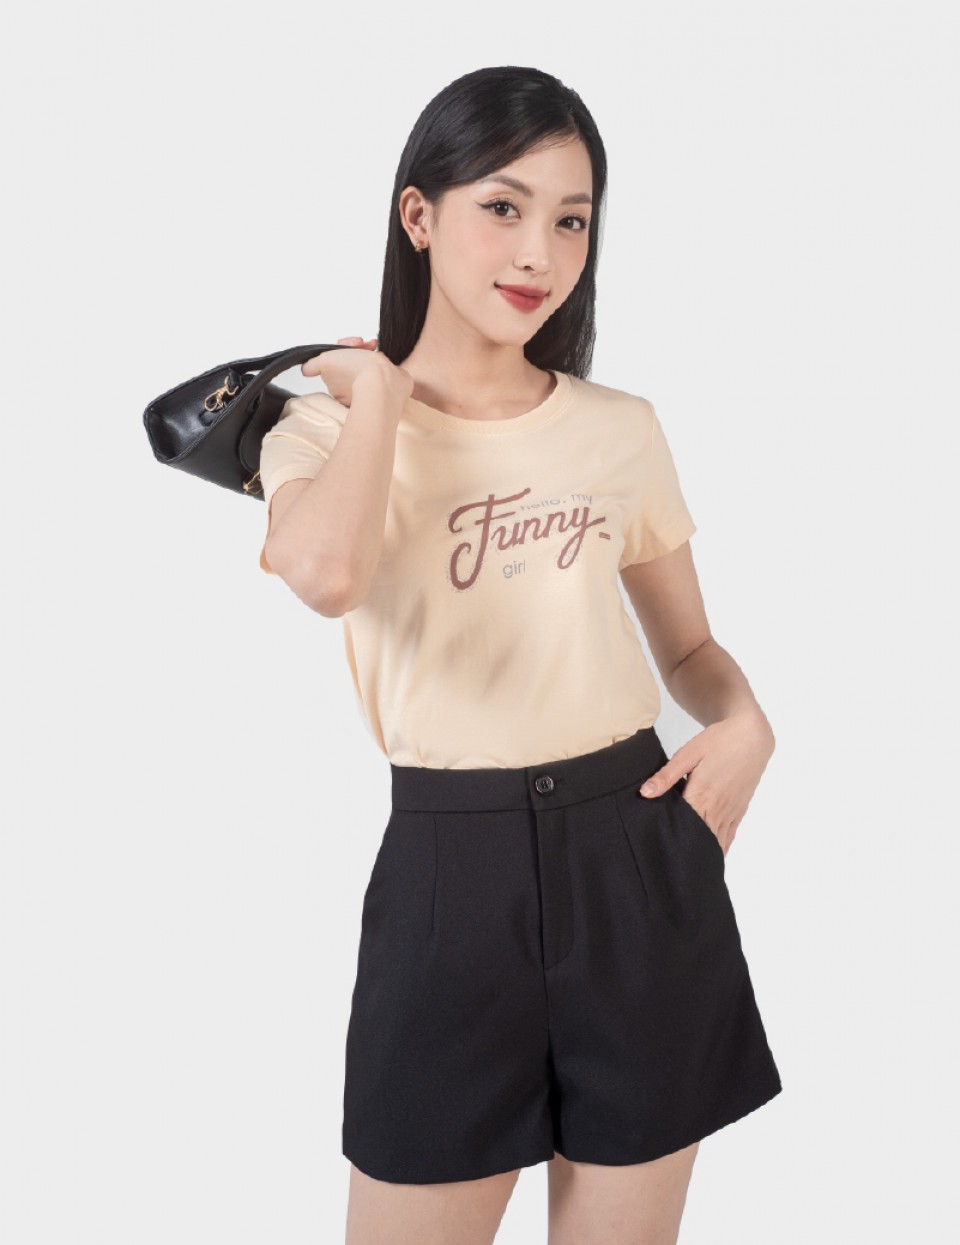 quần giả váy Bigsize quần short nữ quần đùi nữ lưng cao cạp cao chữ a đen  mùa hè Phong cách Hàn Quốc Thời Trang tiểu thư cá tính xinh đẹp cho